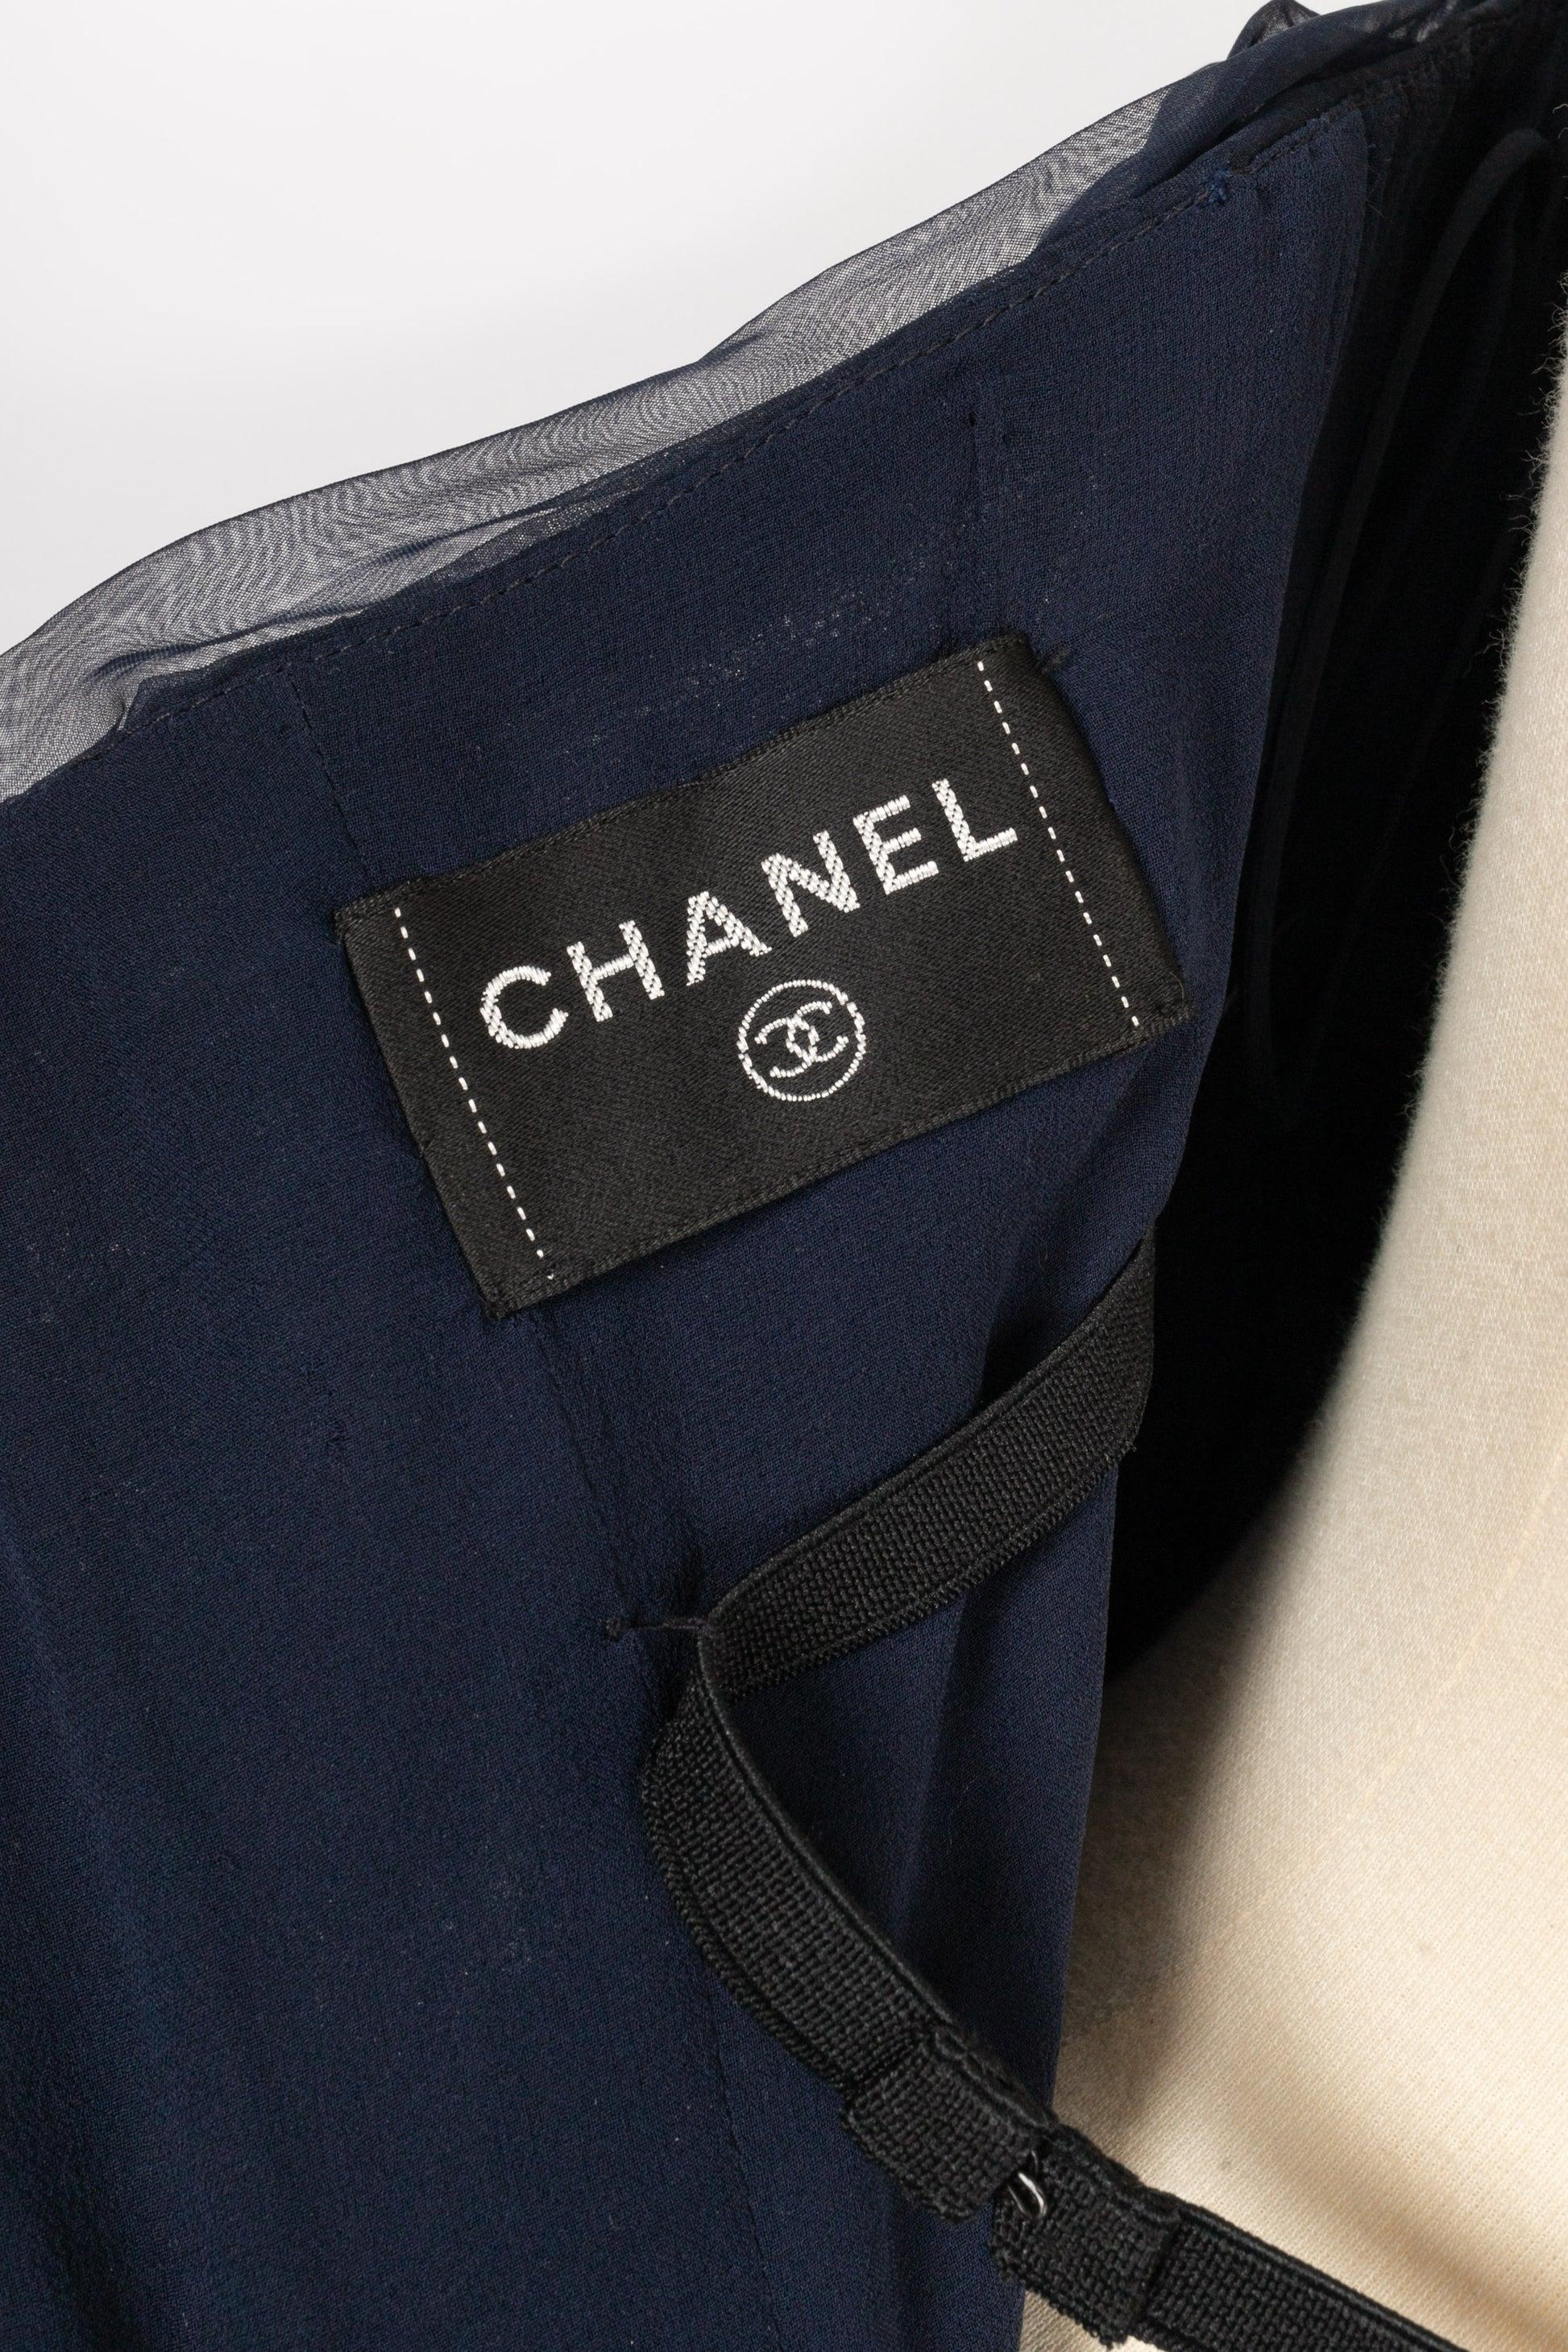 Chanel Long Bustier Dress in Navy Blue Pleated Silk Taffeta 4